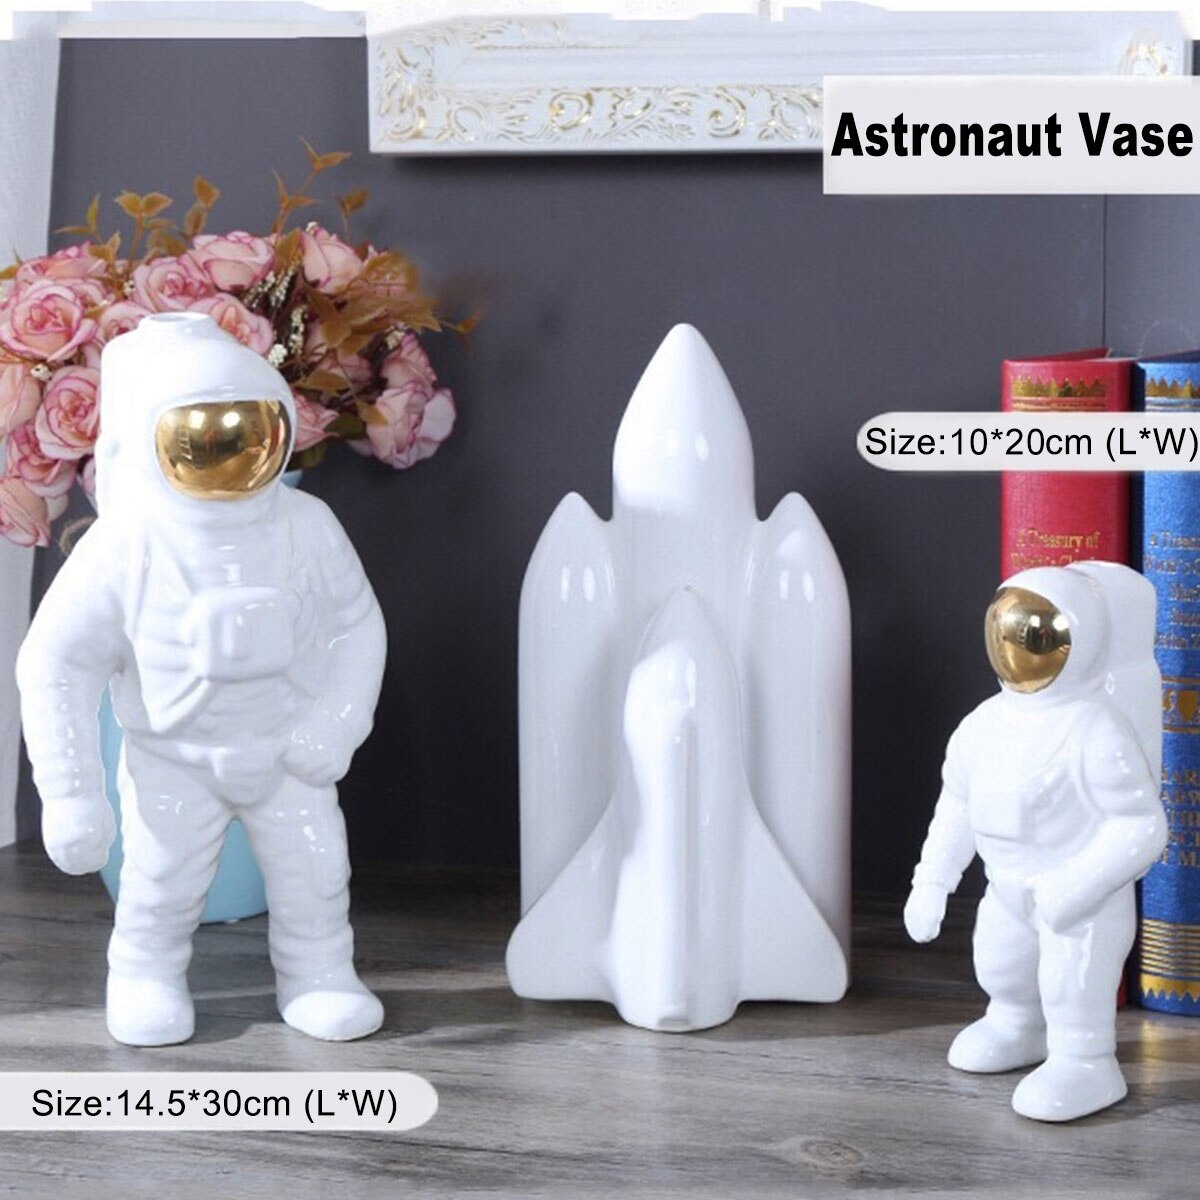 ゴールドスペースマン彫刻宇宙飛行士セラミック花瓶クリエイティブモダン宇宙飛行士モデル飾り像庭テーブルトップホームデコレーション